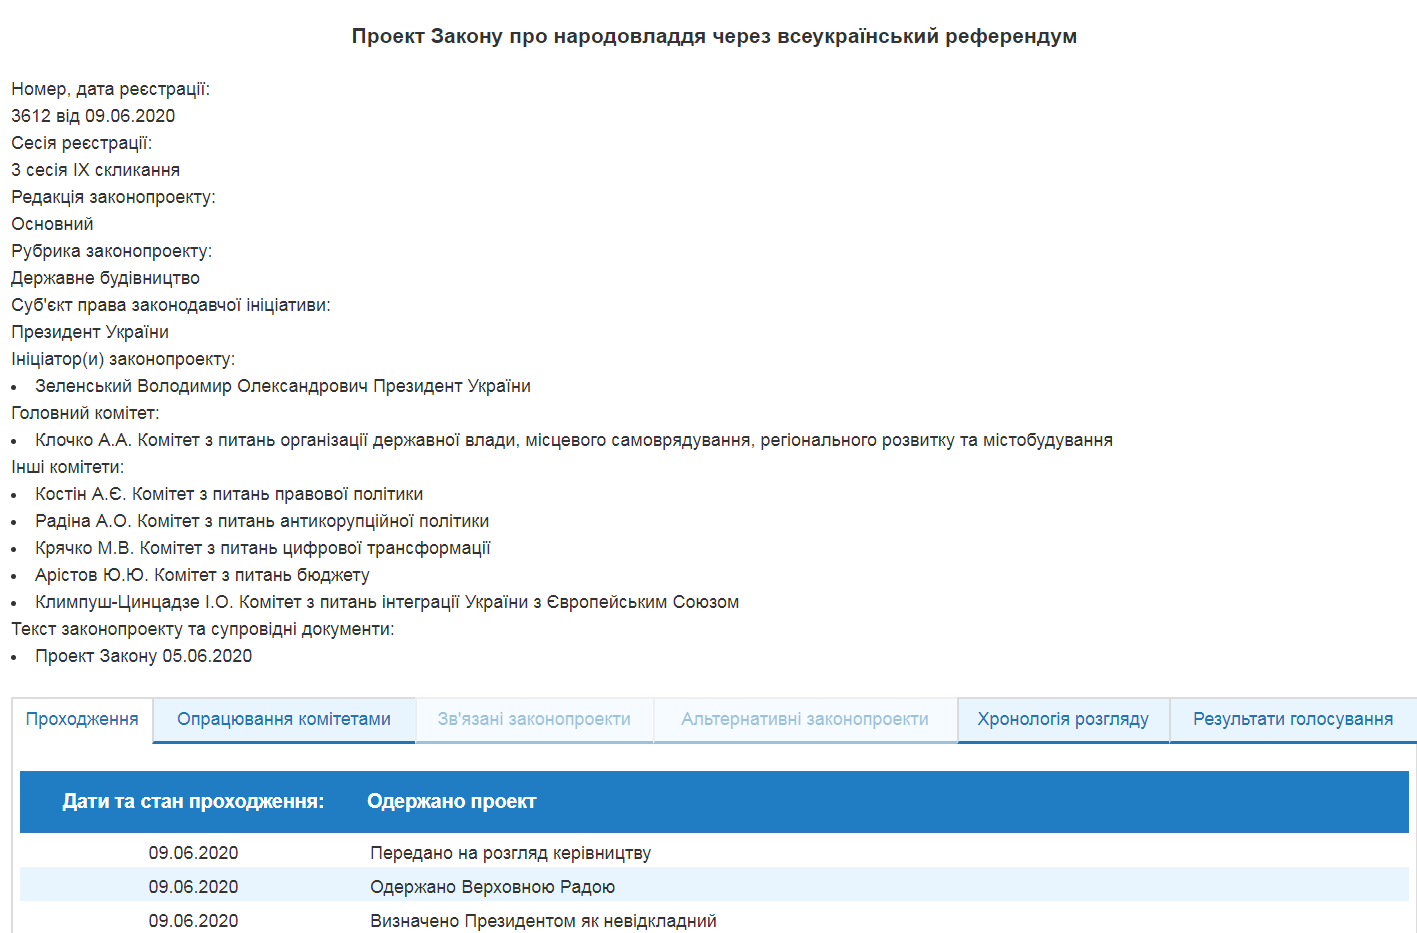 Дані про законопроєкт із сайту Верховної Ради